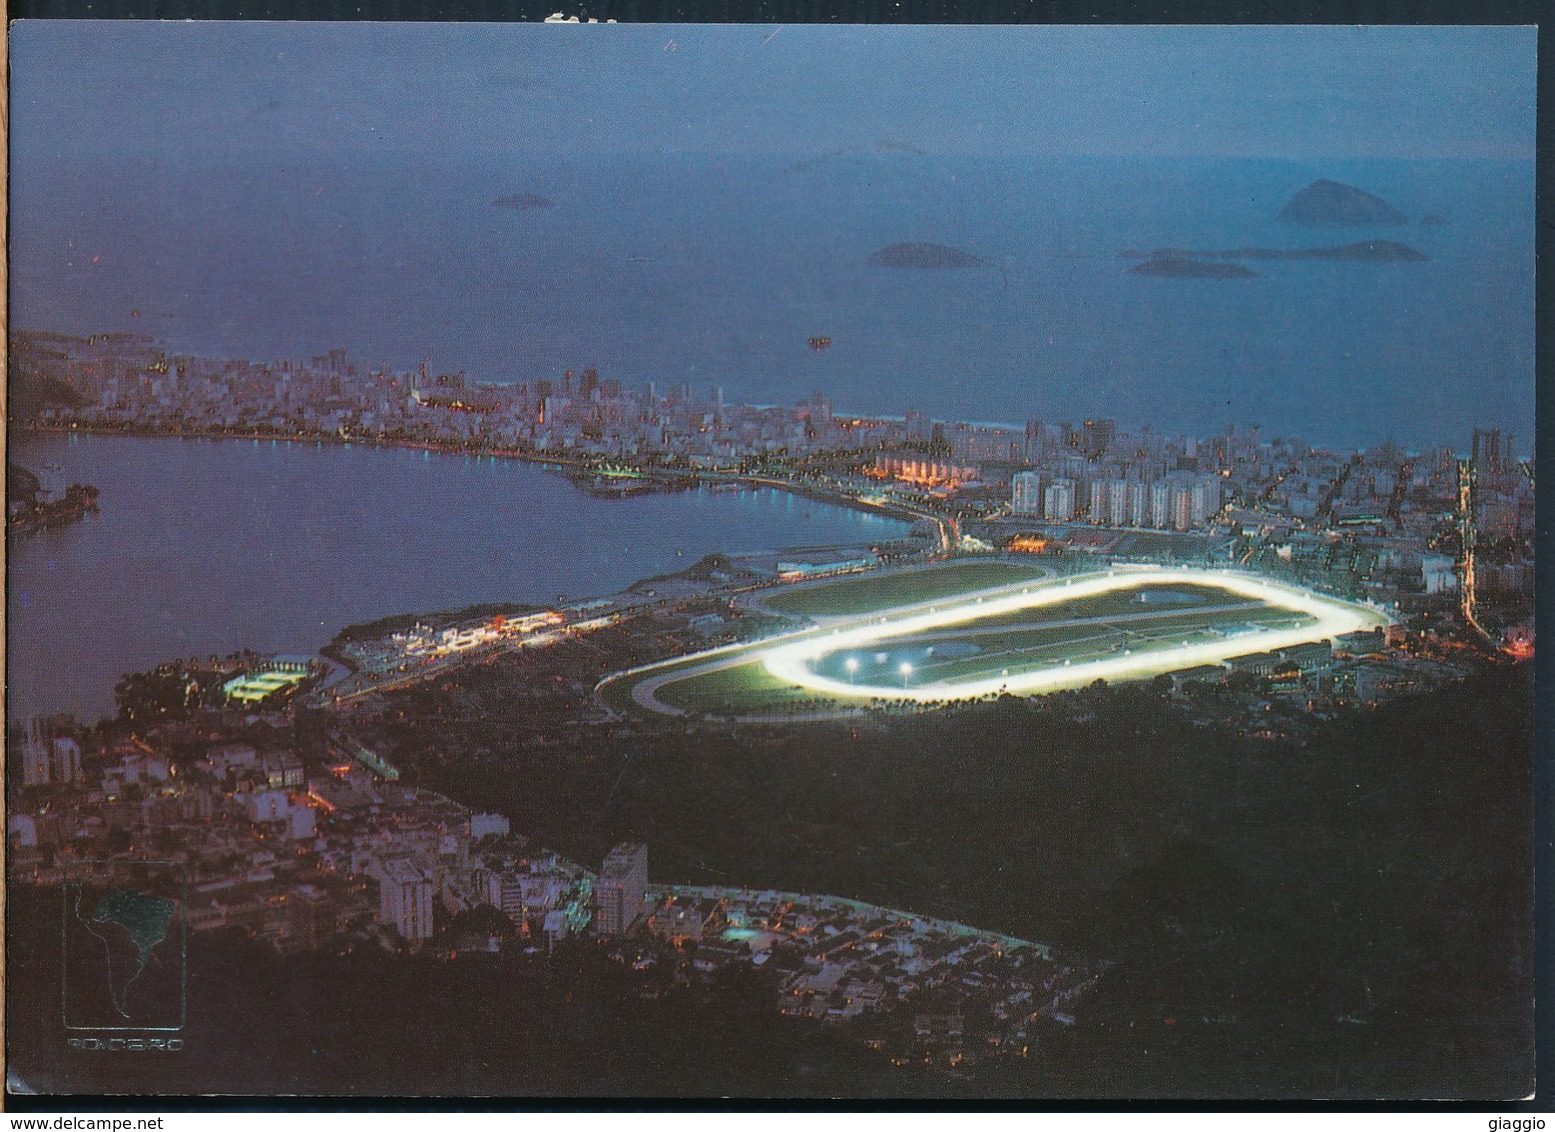 °°° 19998 - BRASIL - RIO DE JANEIRO - LAGOA RODRIGO DE FREITAS E HIPODROMO DA GAVEA - 2004 With Stamps °°° - Rio De Janeiro